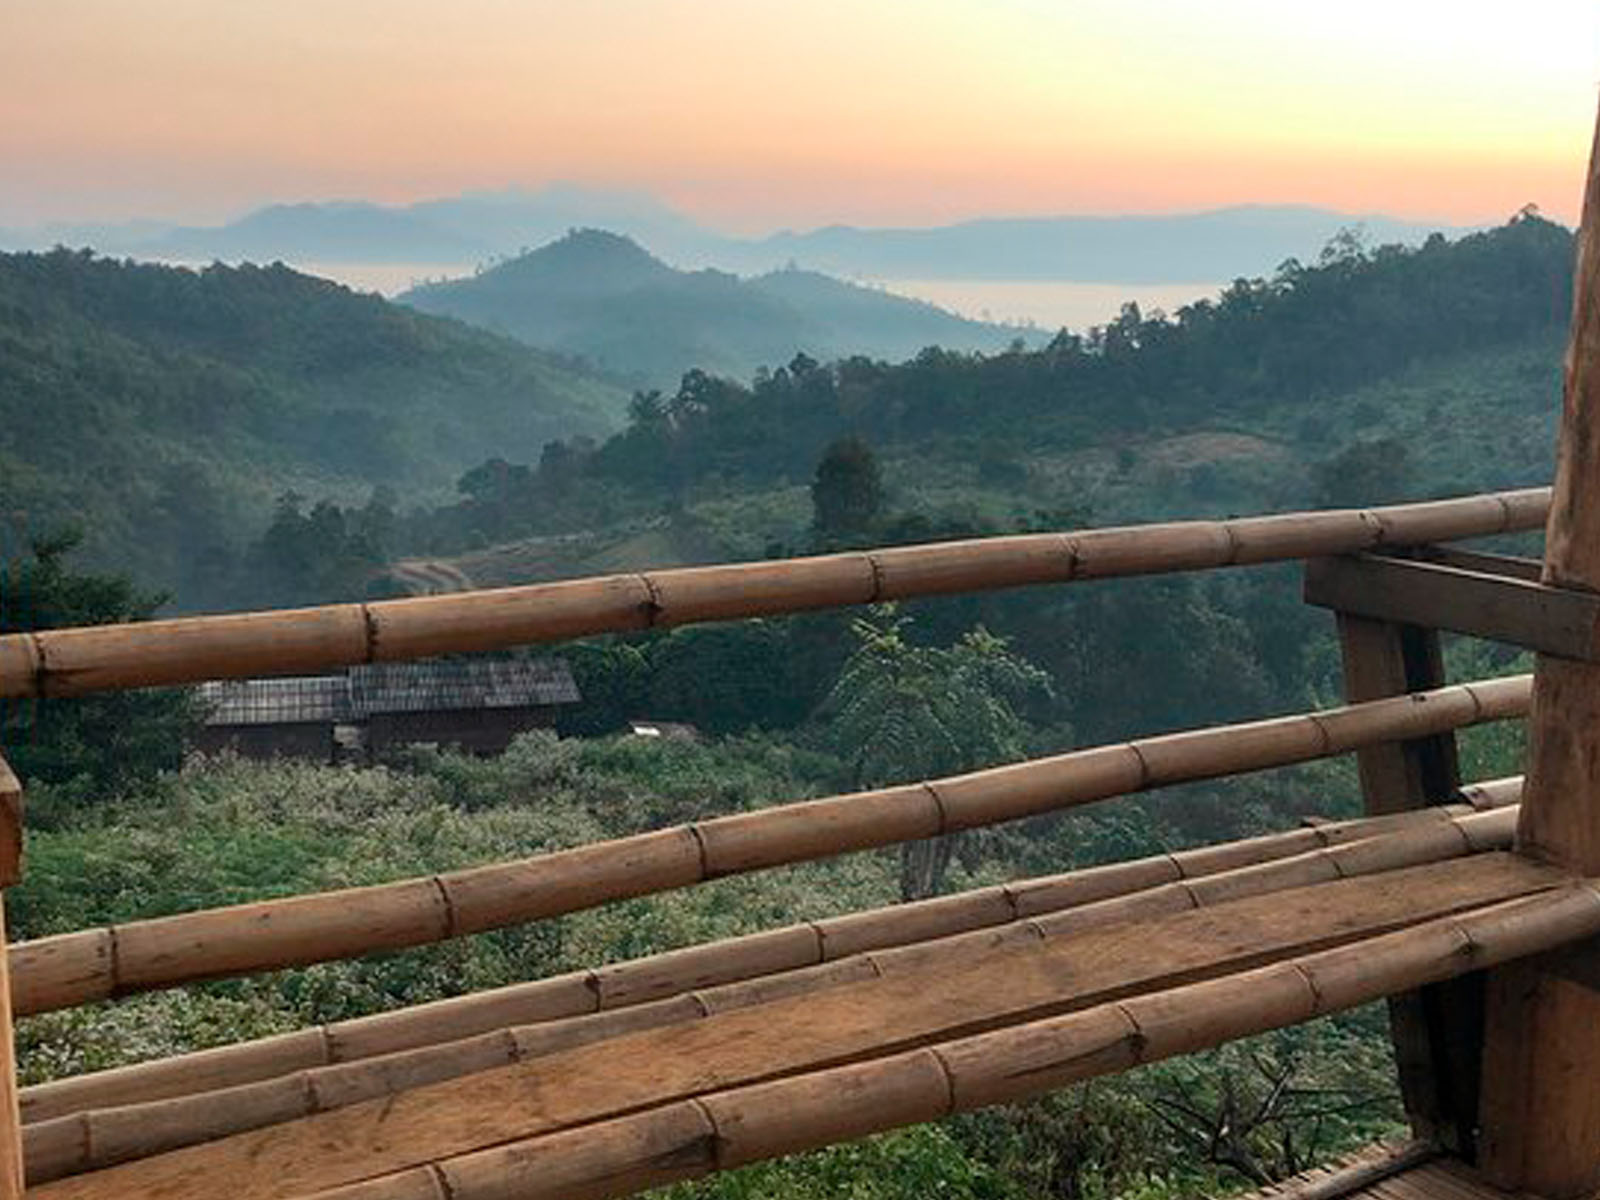 Absolut einmalig und authentisch | Chiang Mai Trekking | Das beste Trekking in Chiang Mai mit Piroon Nantaya